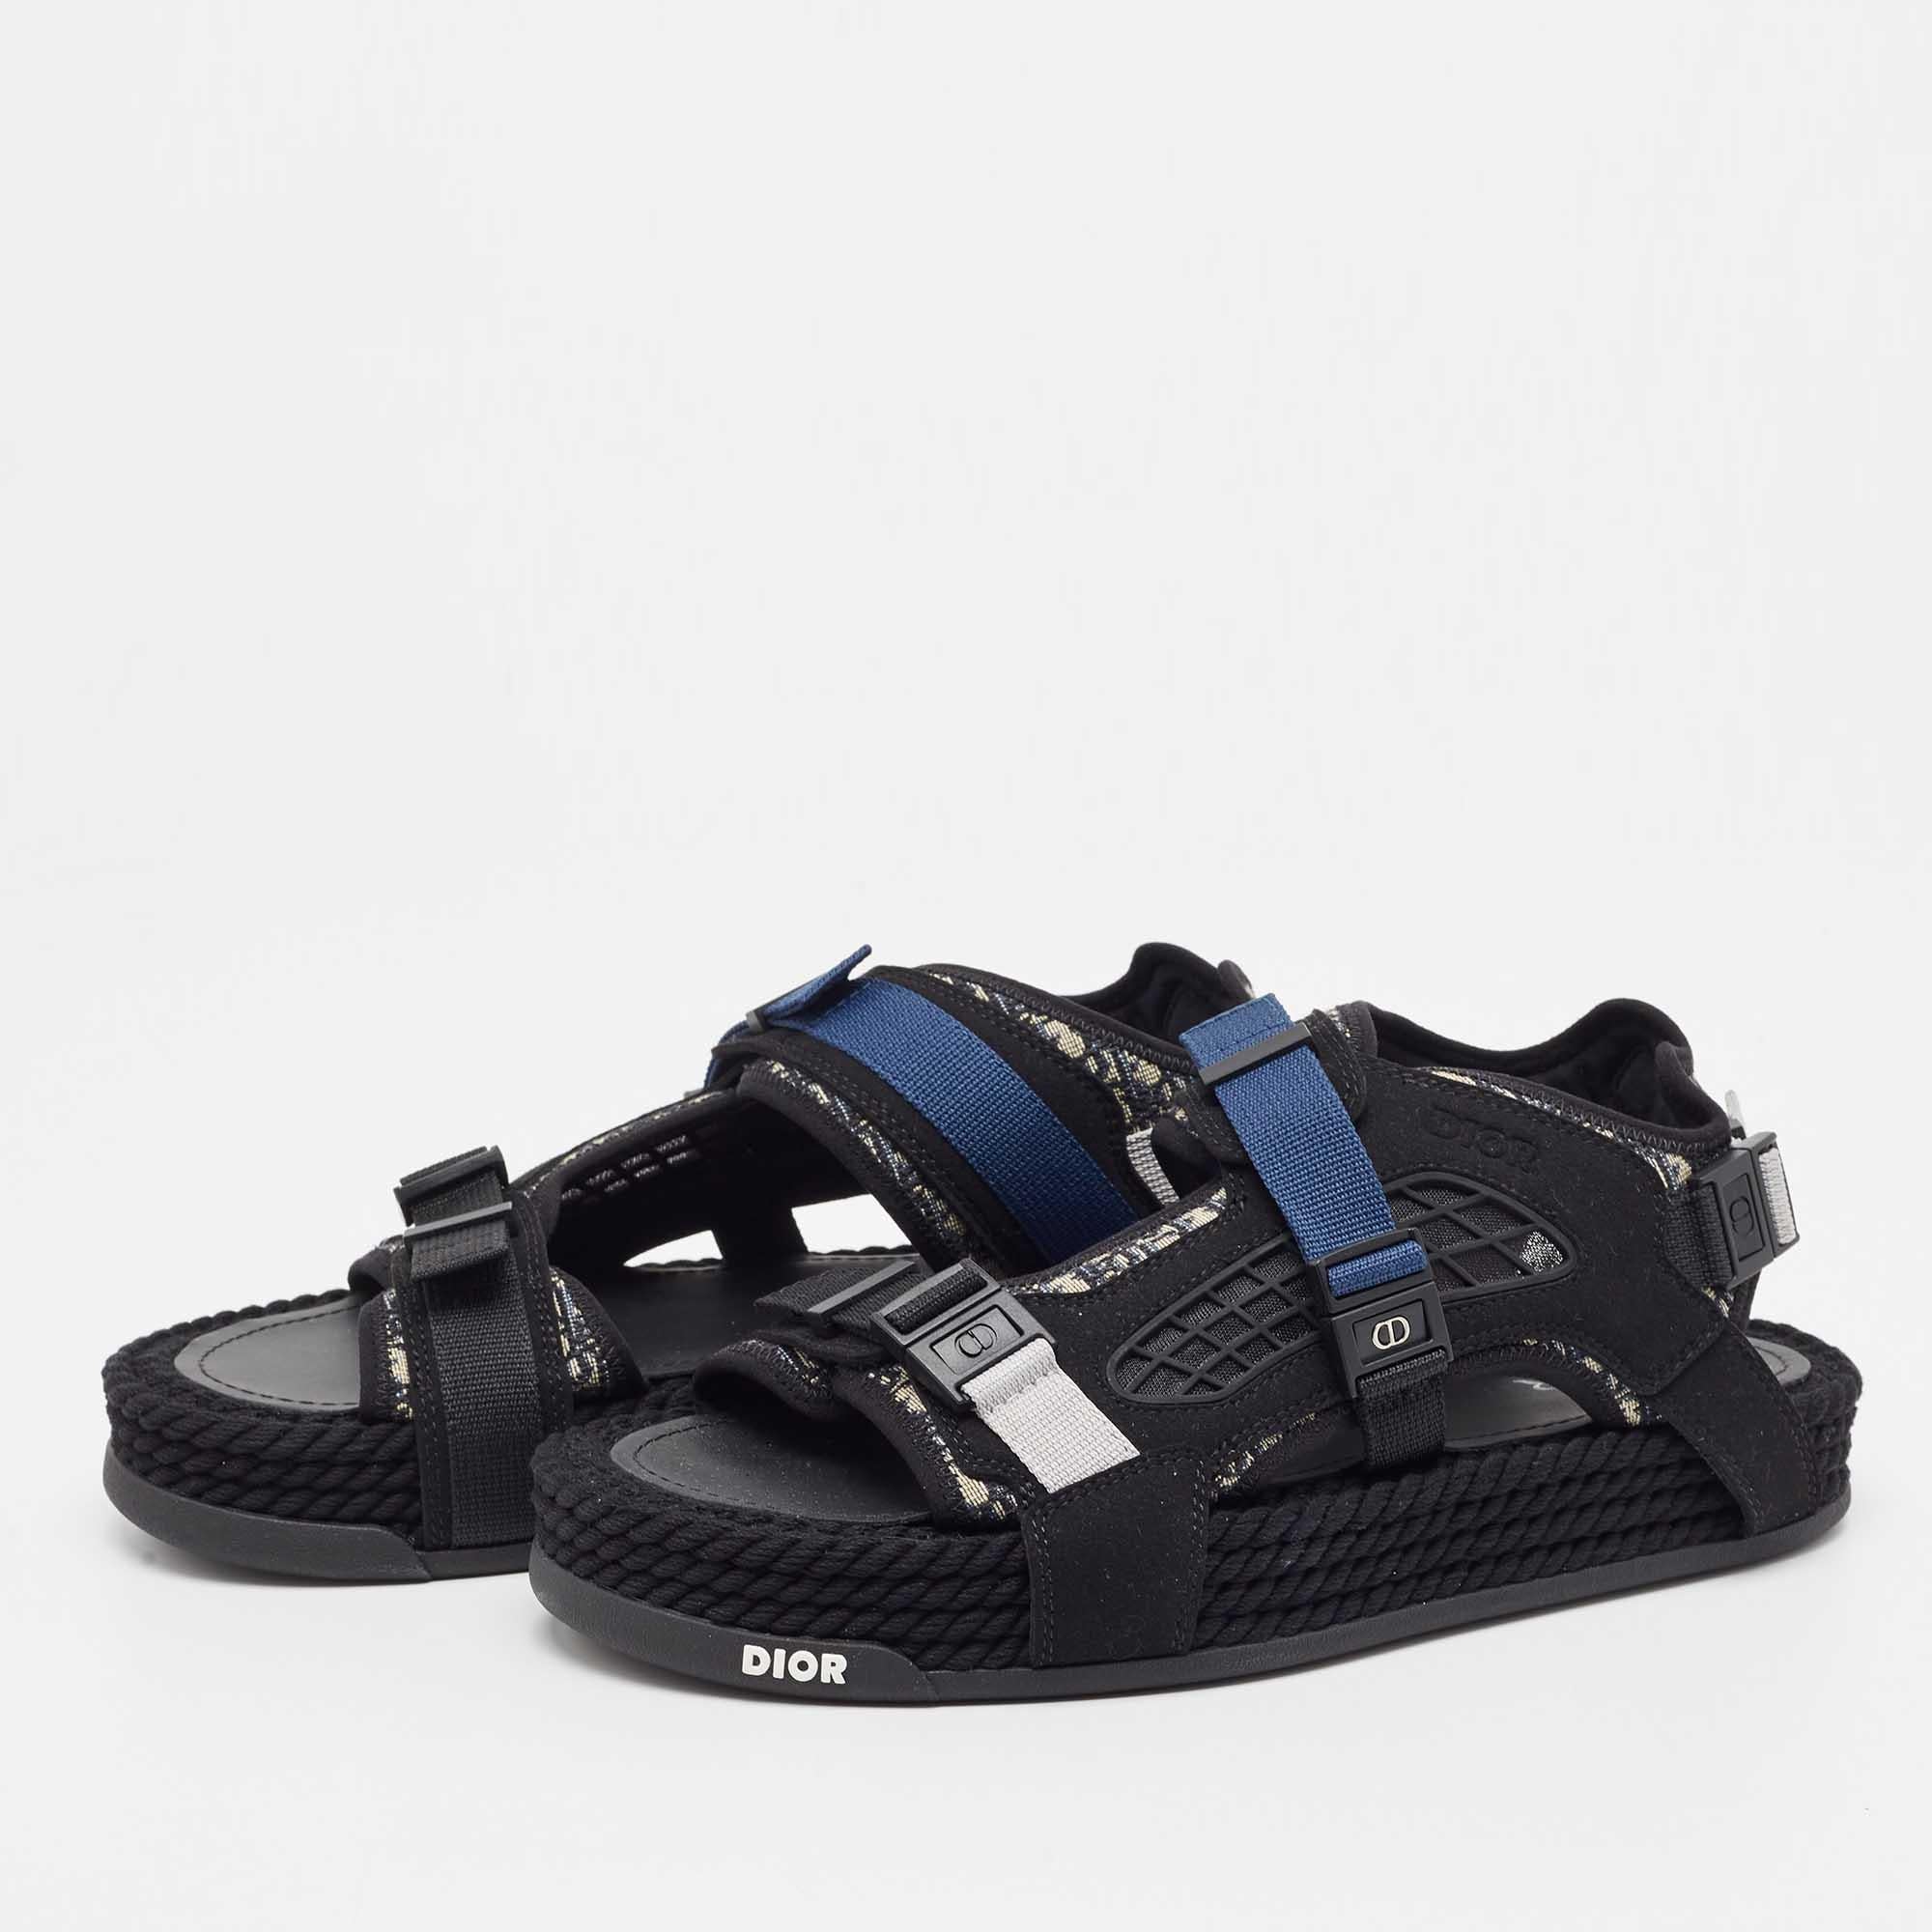 Men's DIOR Black/Blue Jacquard Atlas Sandals Size 41